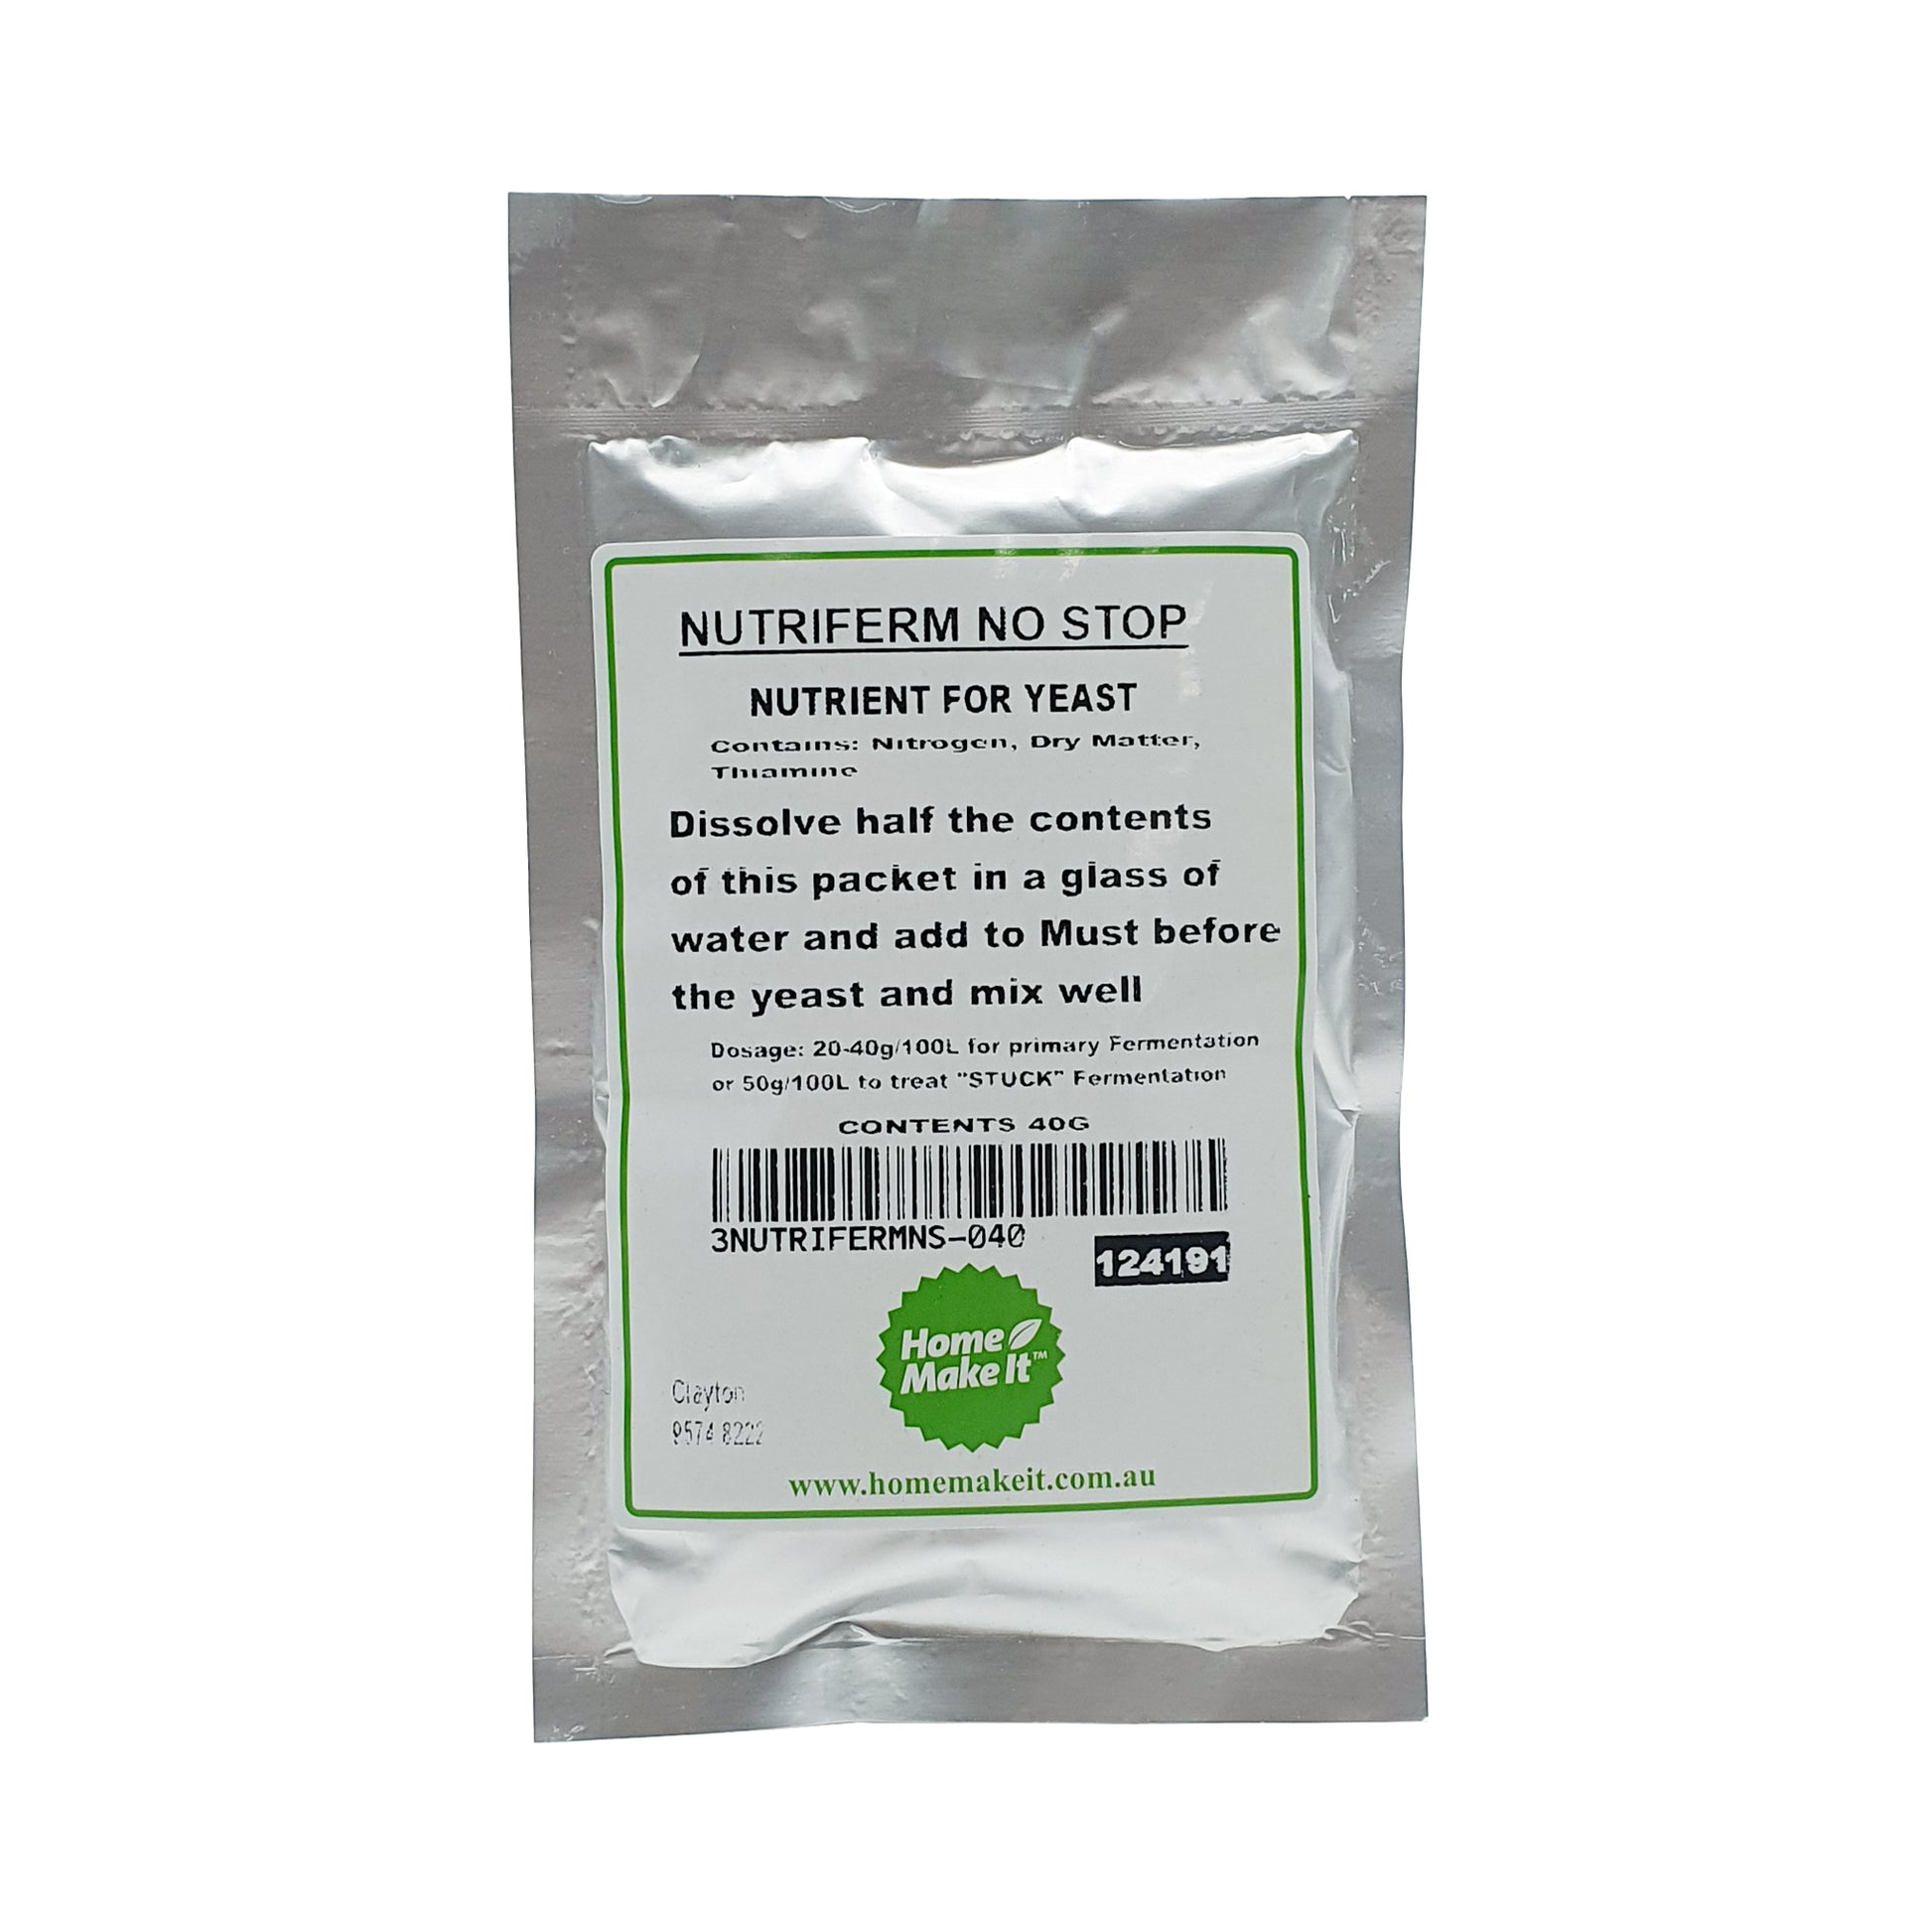 40 gram bag of nutriferm no stop to treat stuck fermentations. 